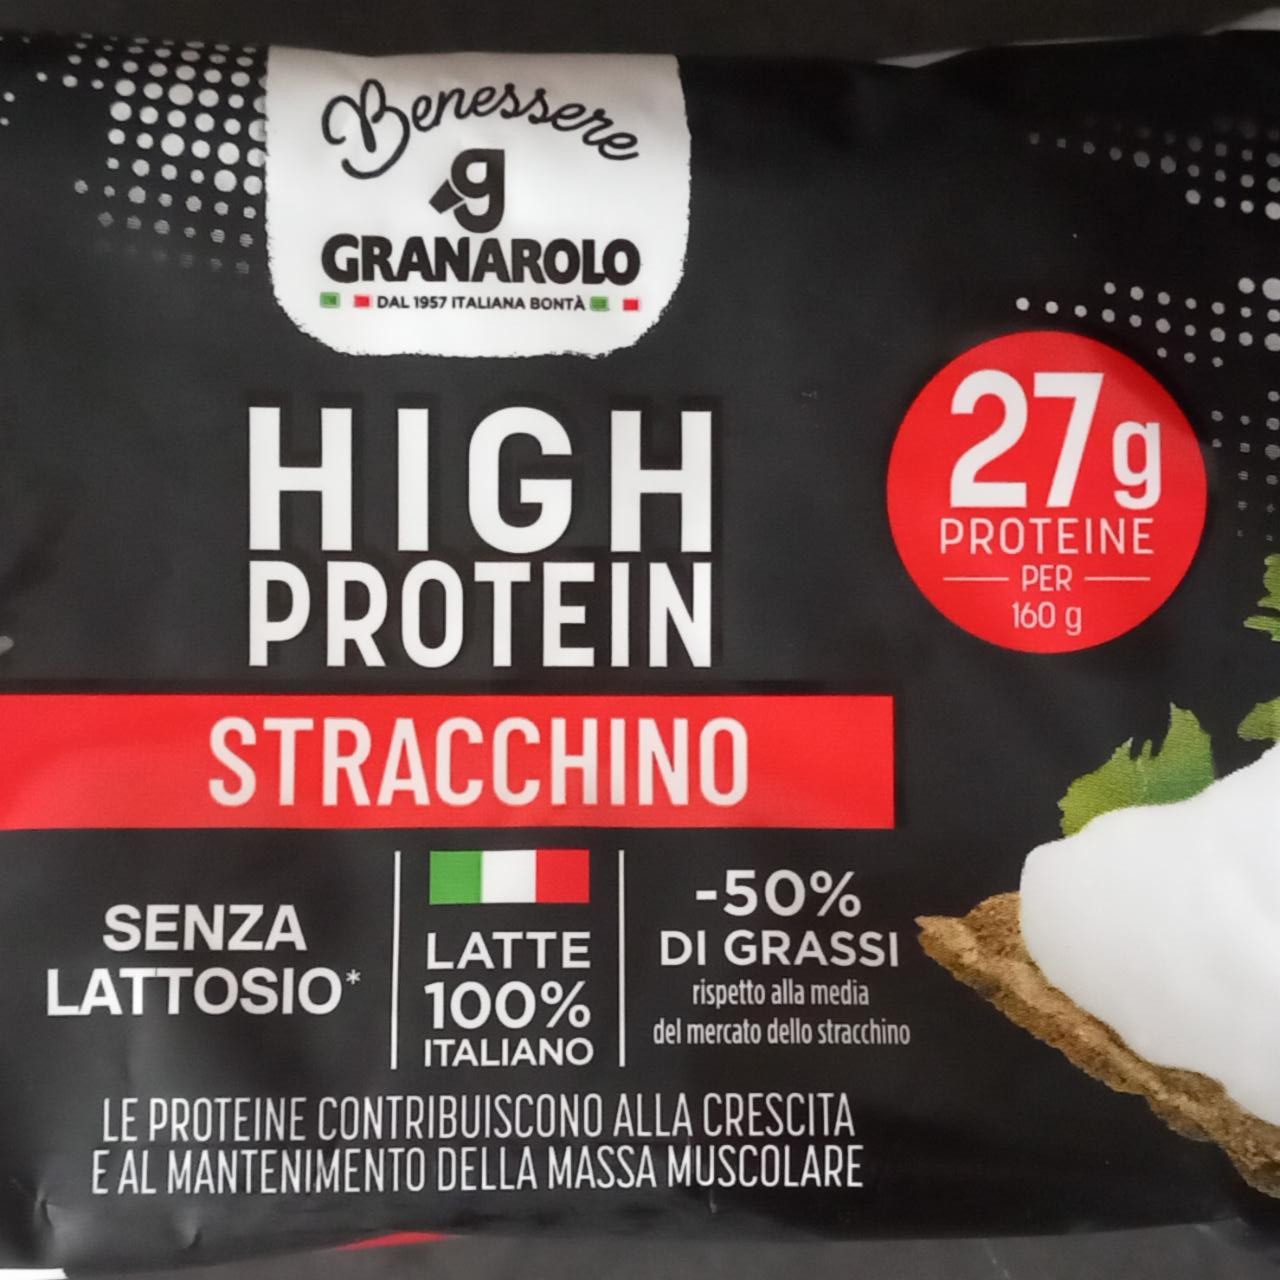 Fotografie - High protein Stracchino Granarolo